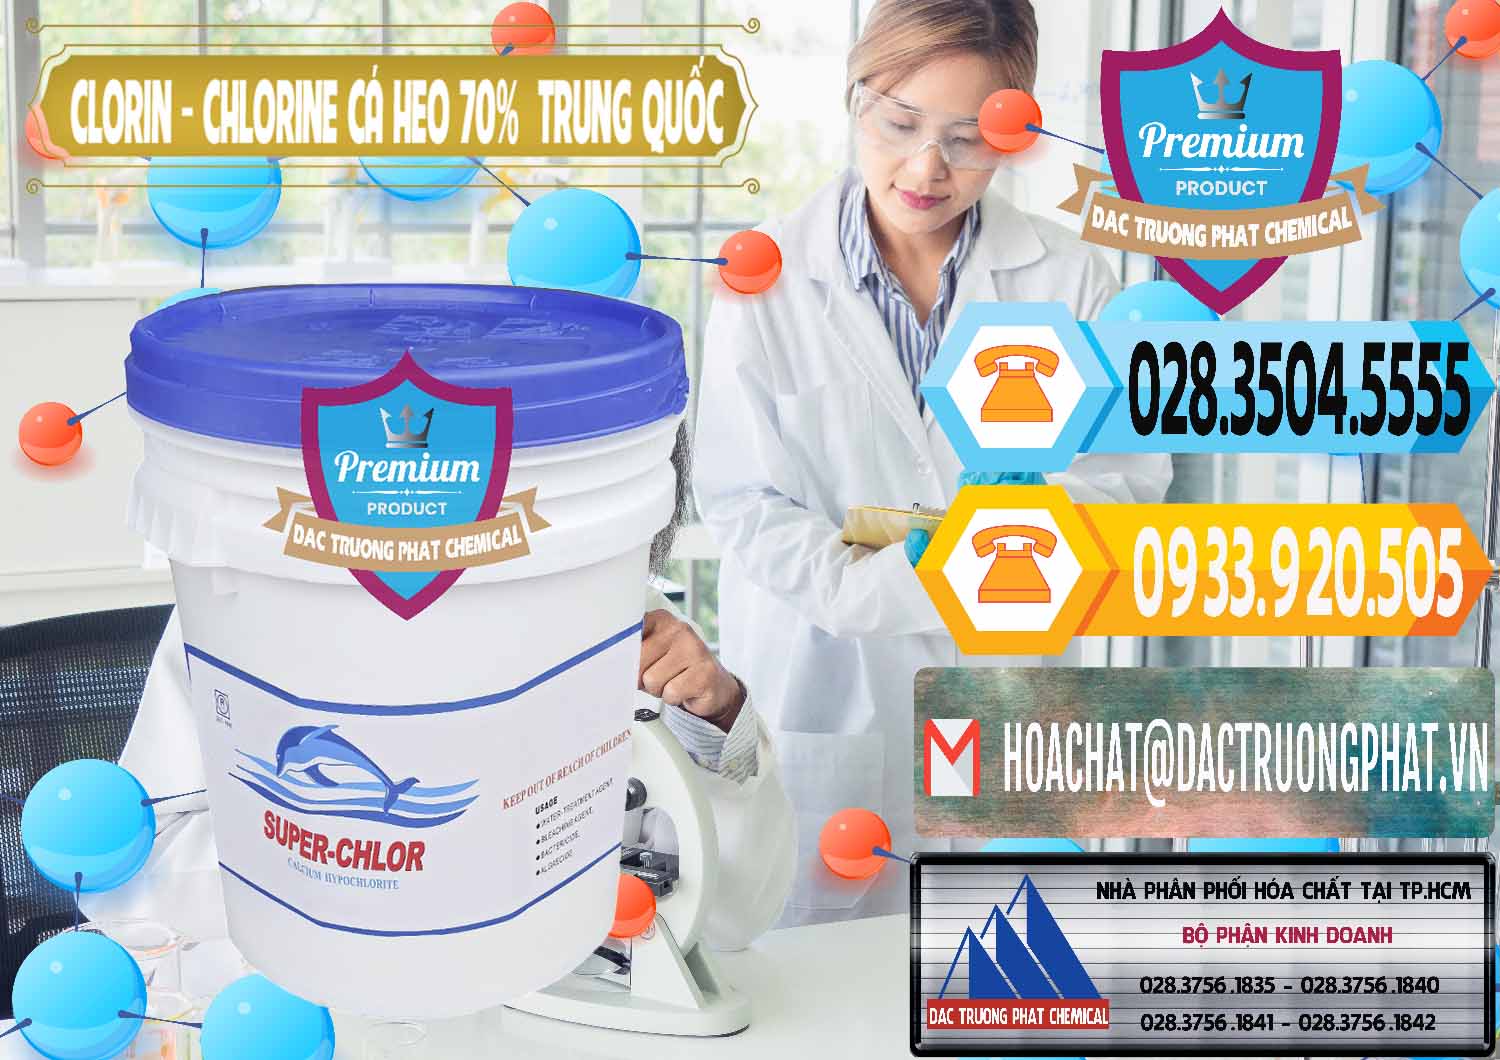 Công ty bán & phân phối Clorin - Chlorine Cá Heo 70% Super Chlor Nắp Xanh Trung Quốc China - 0209 - Nơi cung cấp và phân phối hóa chất tại TP.HCM - hoachattayrua.net